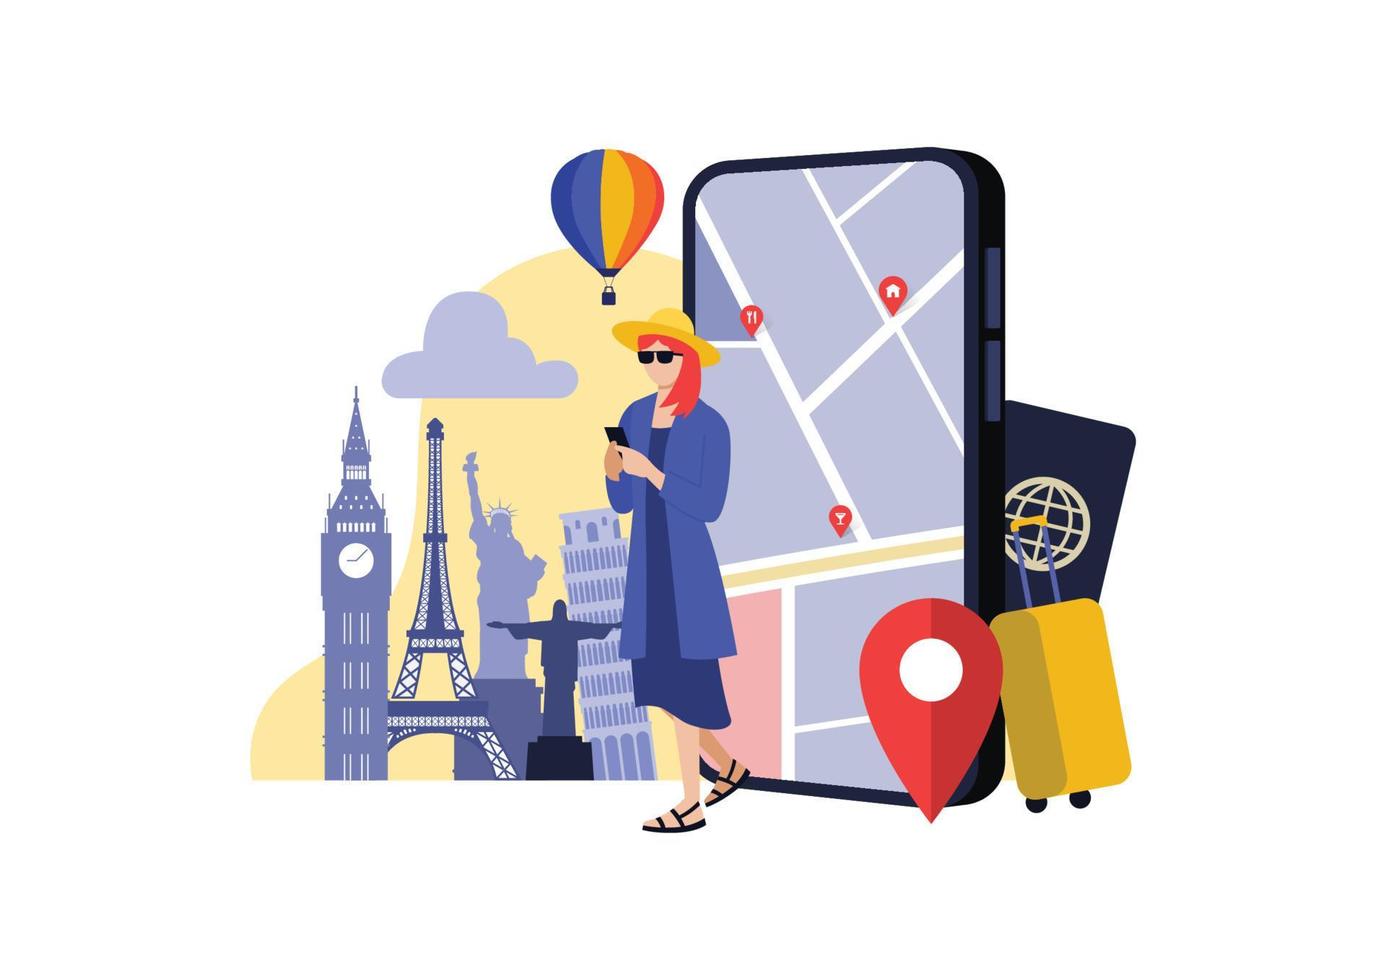 mujer usando teléfono con pantalla de teléfono y atracciones populares en el fondo, imagen conceptual de una aplicación de navegación para viajes, ilustración vectorial vector